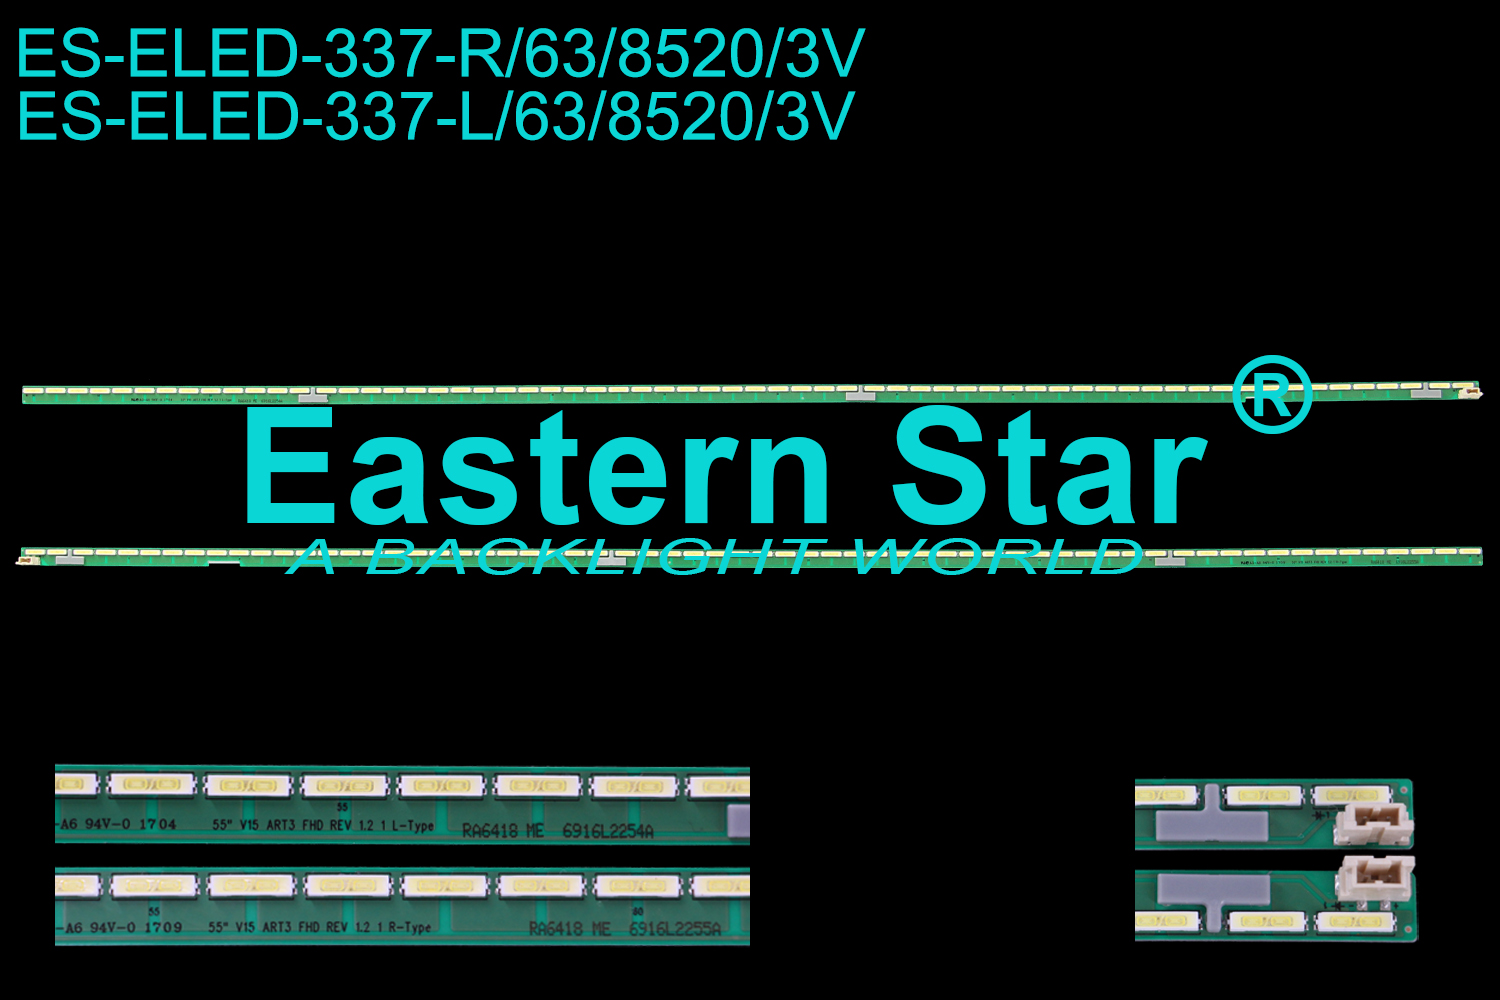 ES-ELED-337 ELED/EDGE TV backlight use for 55'' Lg 55SE3KB-BE, 55SM5KB-BD, 55LF6300-UA, 55LX341C-UA, 55LX540S-UA 55" V15 ART3 FHD REV1.2 1 R-TYPE,  55" V15 ART3 FHD REV1.2 1 L-TYPE 6916L2234A, 6916L2235A , 6916L-2254A, 6916L-2255A LED STRIPS(2)